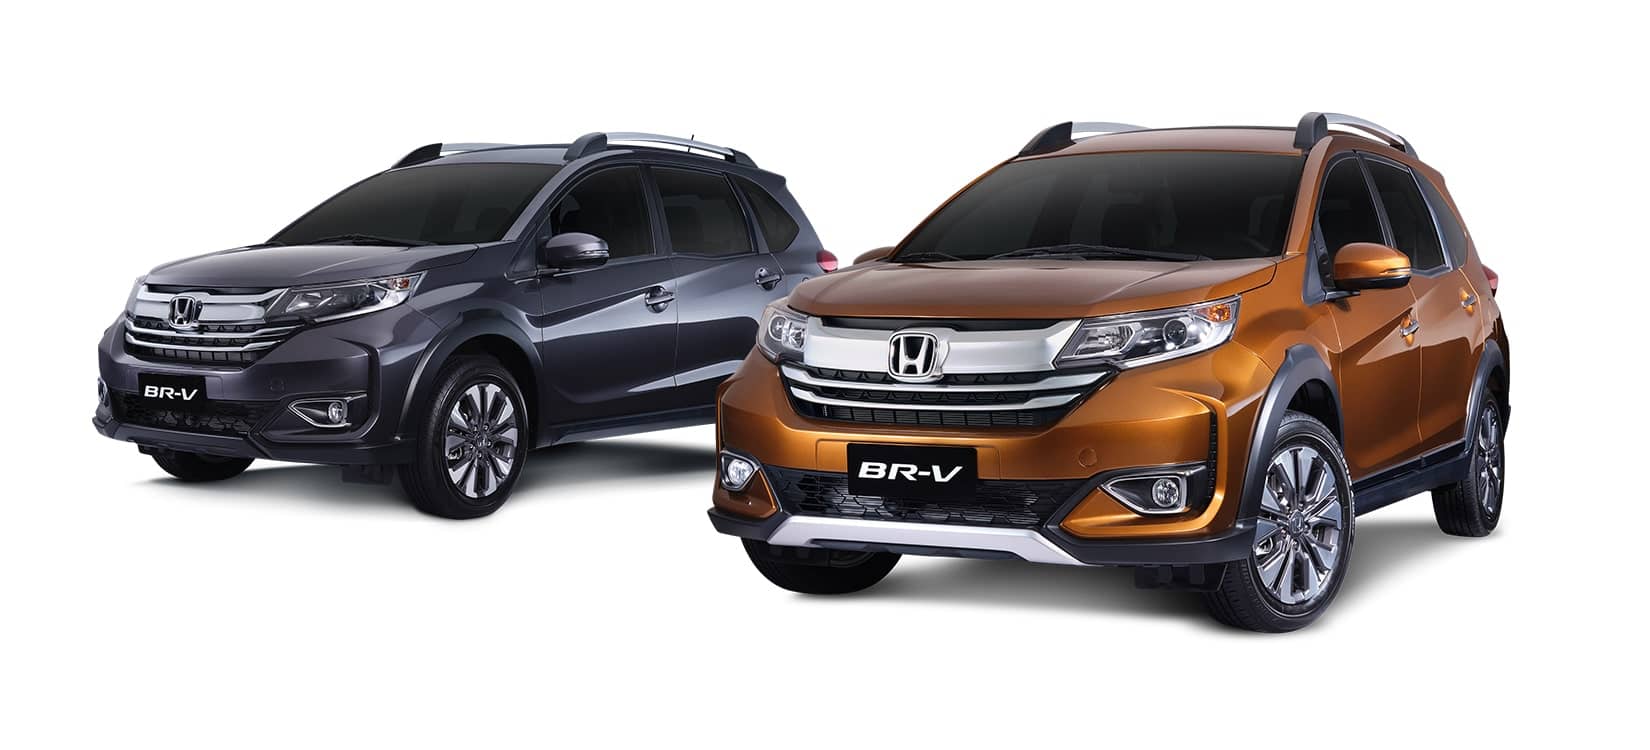 Honda Cars Philippines › Honda debuts refreshed BR-V